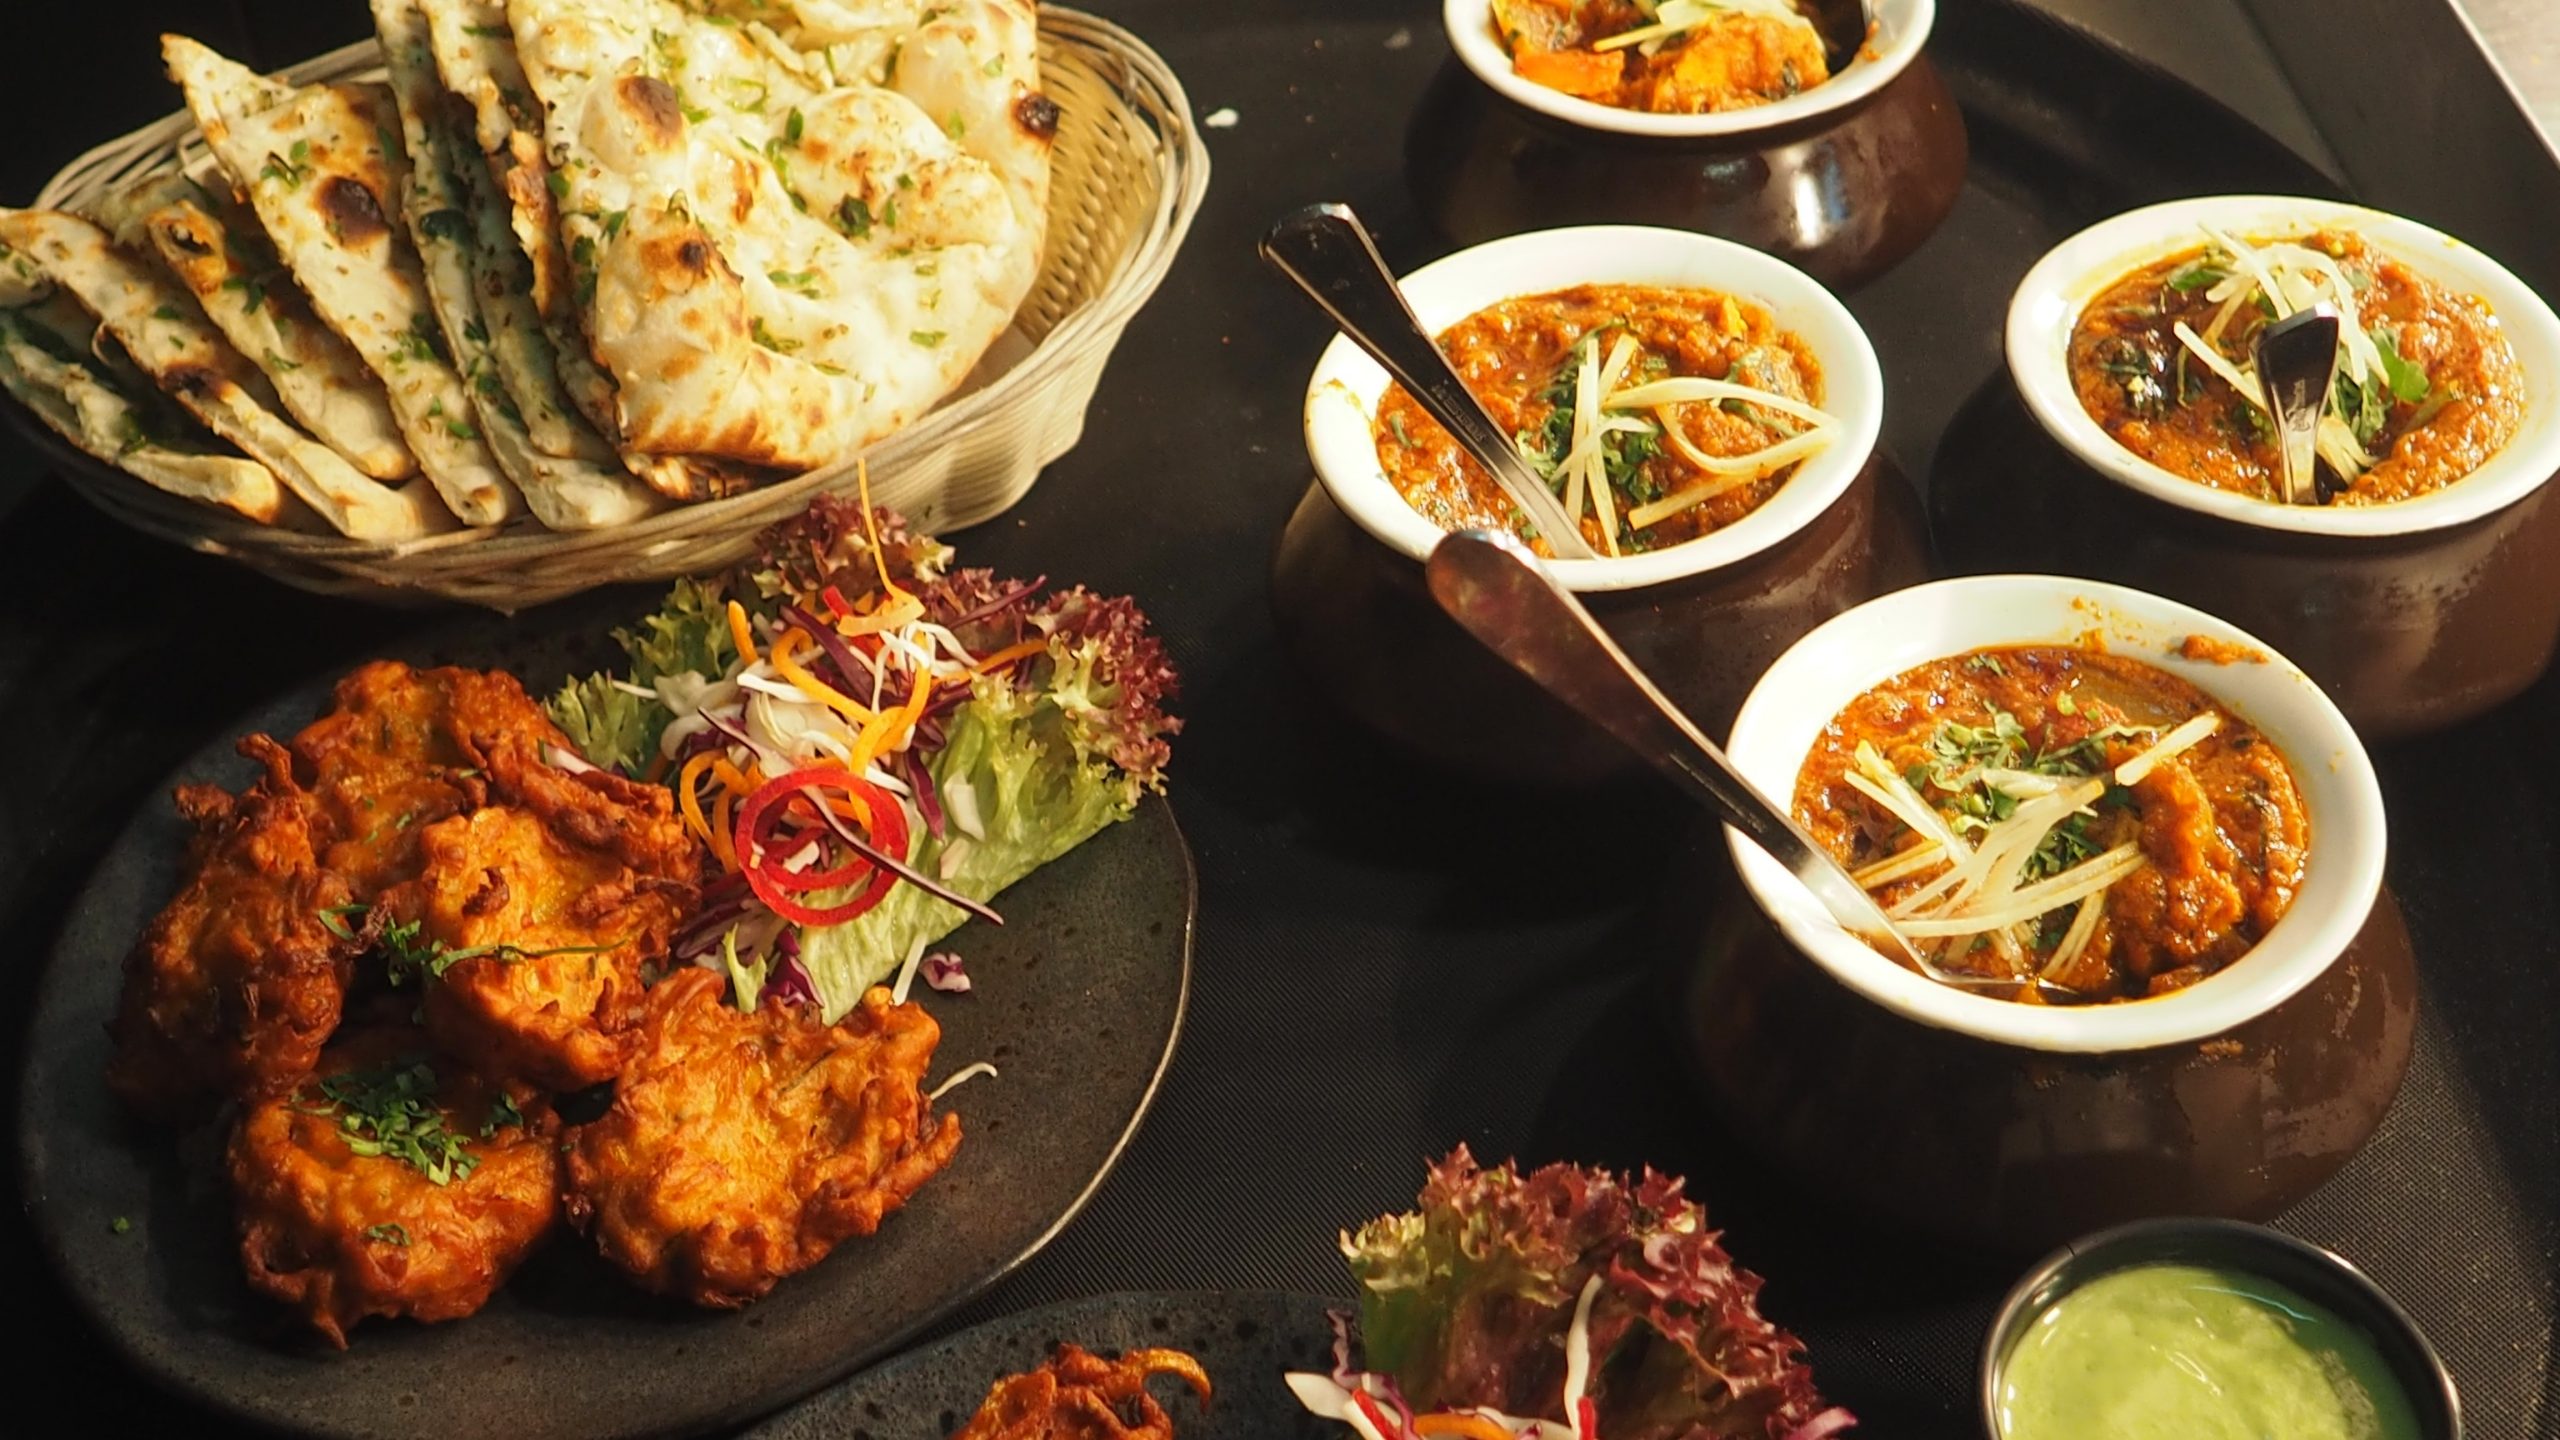 Ramazan'a Özel Restoran harcamalarınızda 100 TL Worldpuan Efsane Kampanyası